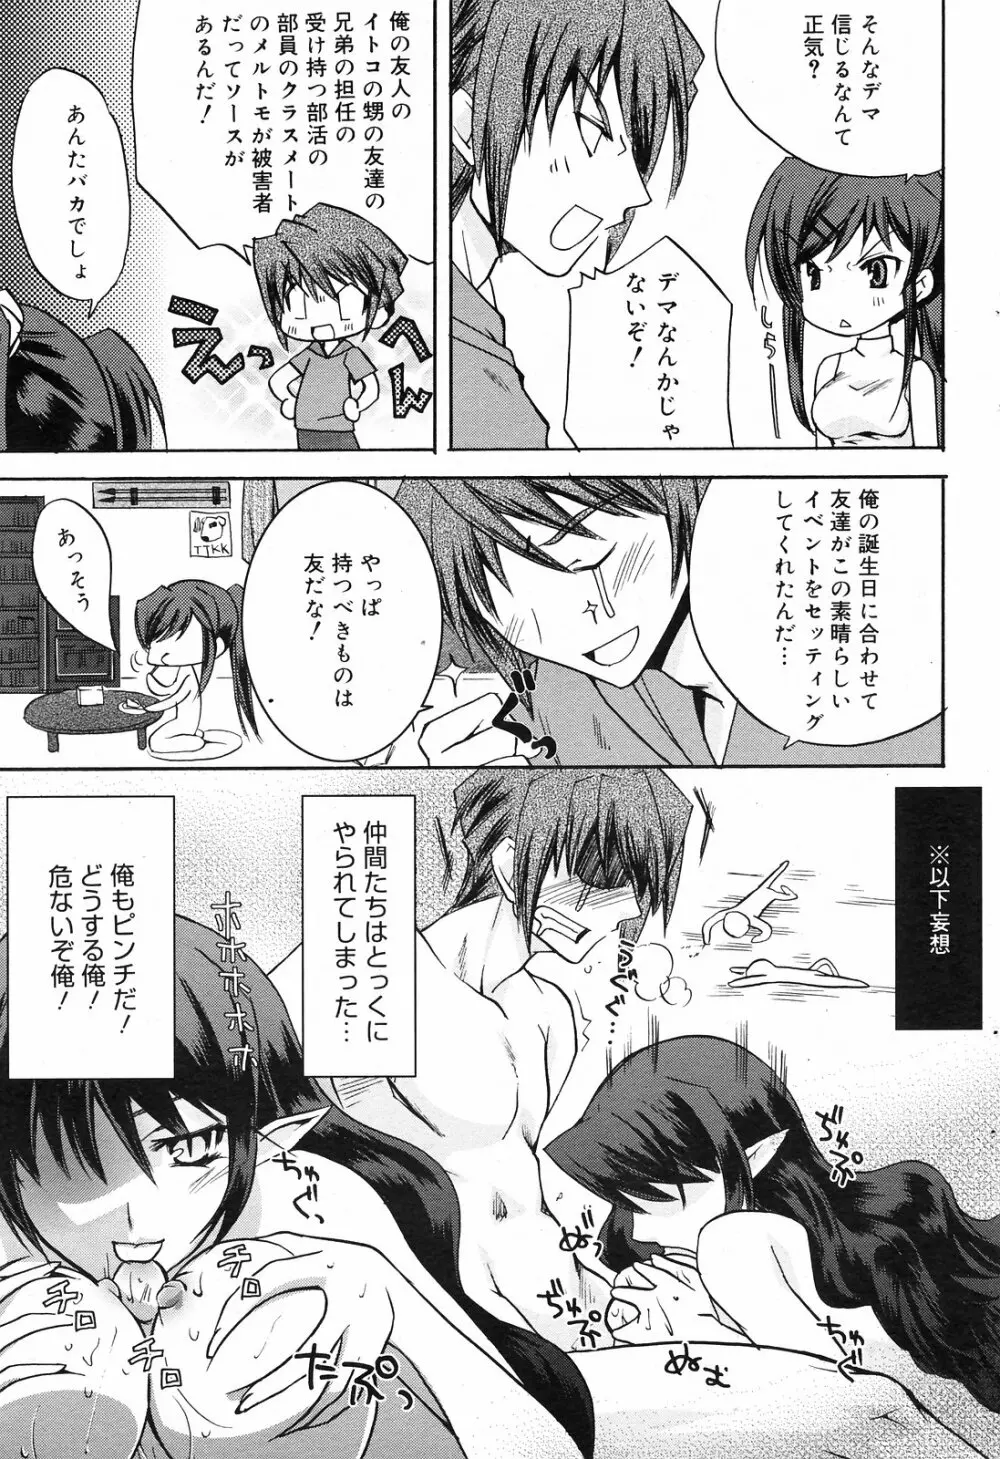 Manga Bangaichi 2008-09 79ページ